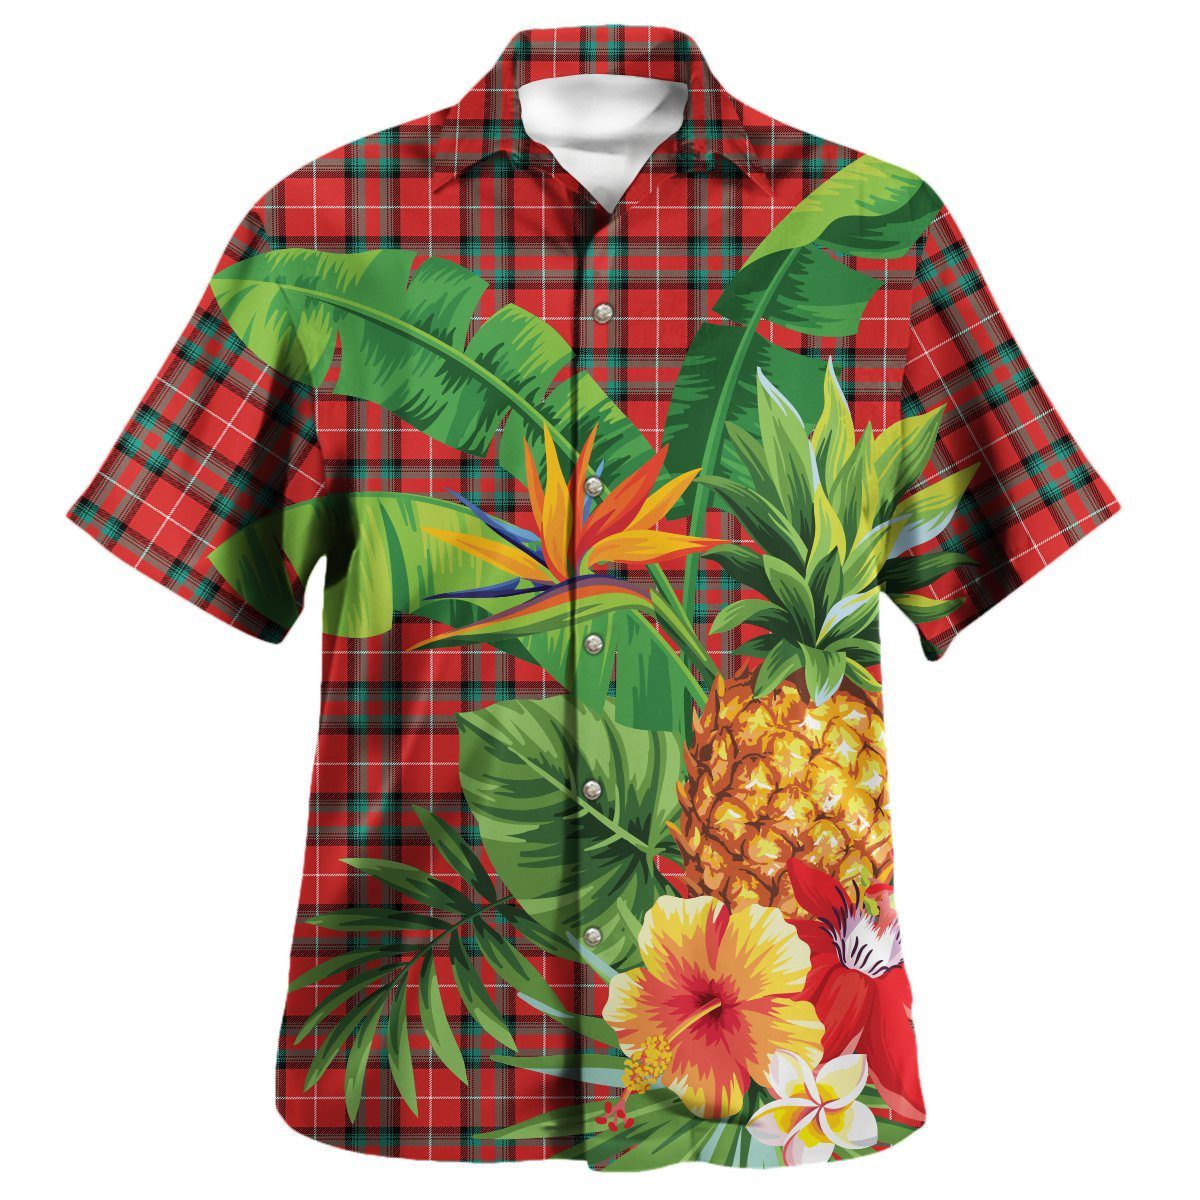 Stuart of Bute Tartan Aloha Shirt version 2